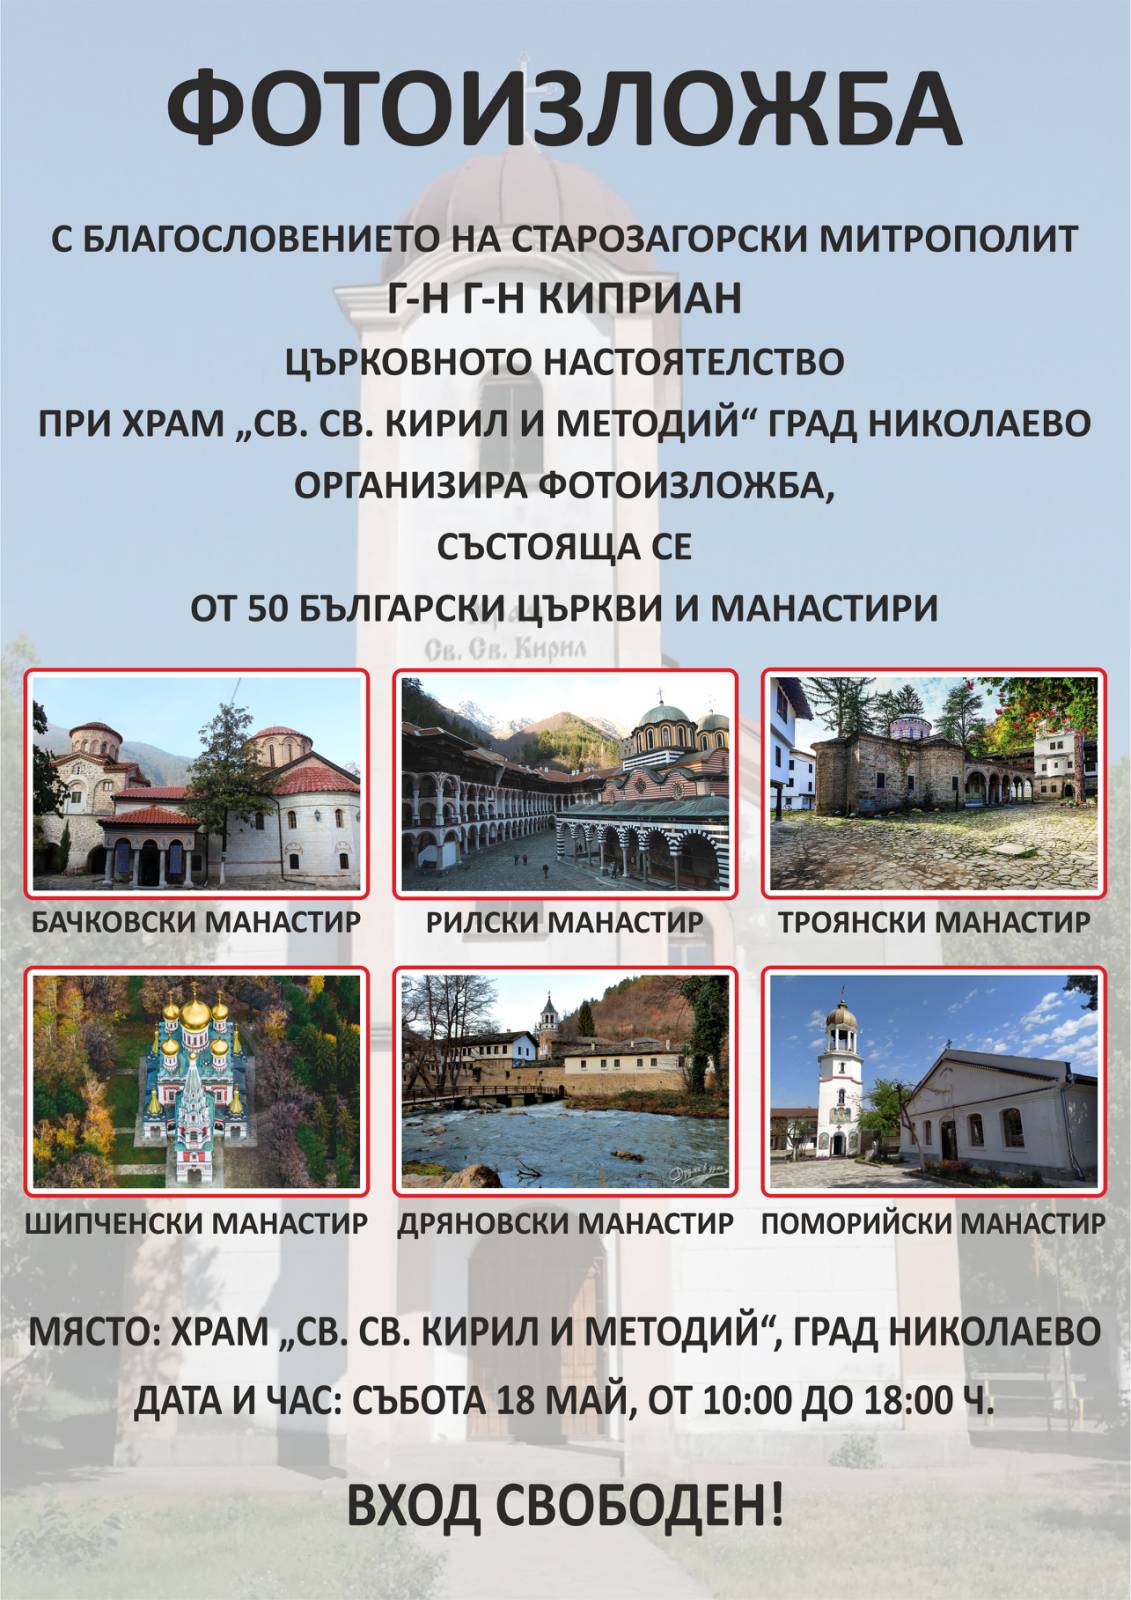 Фотоизложба на 50 български църкви и манастири image